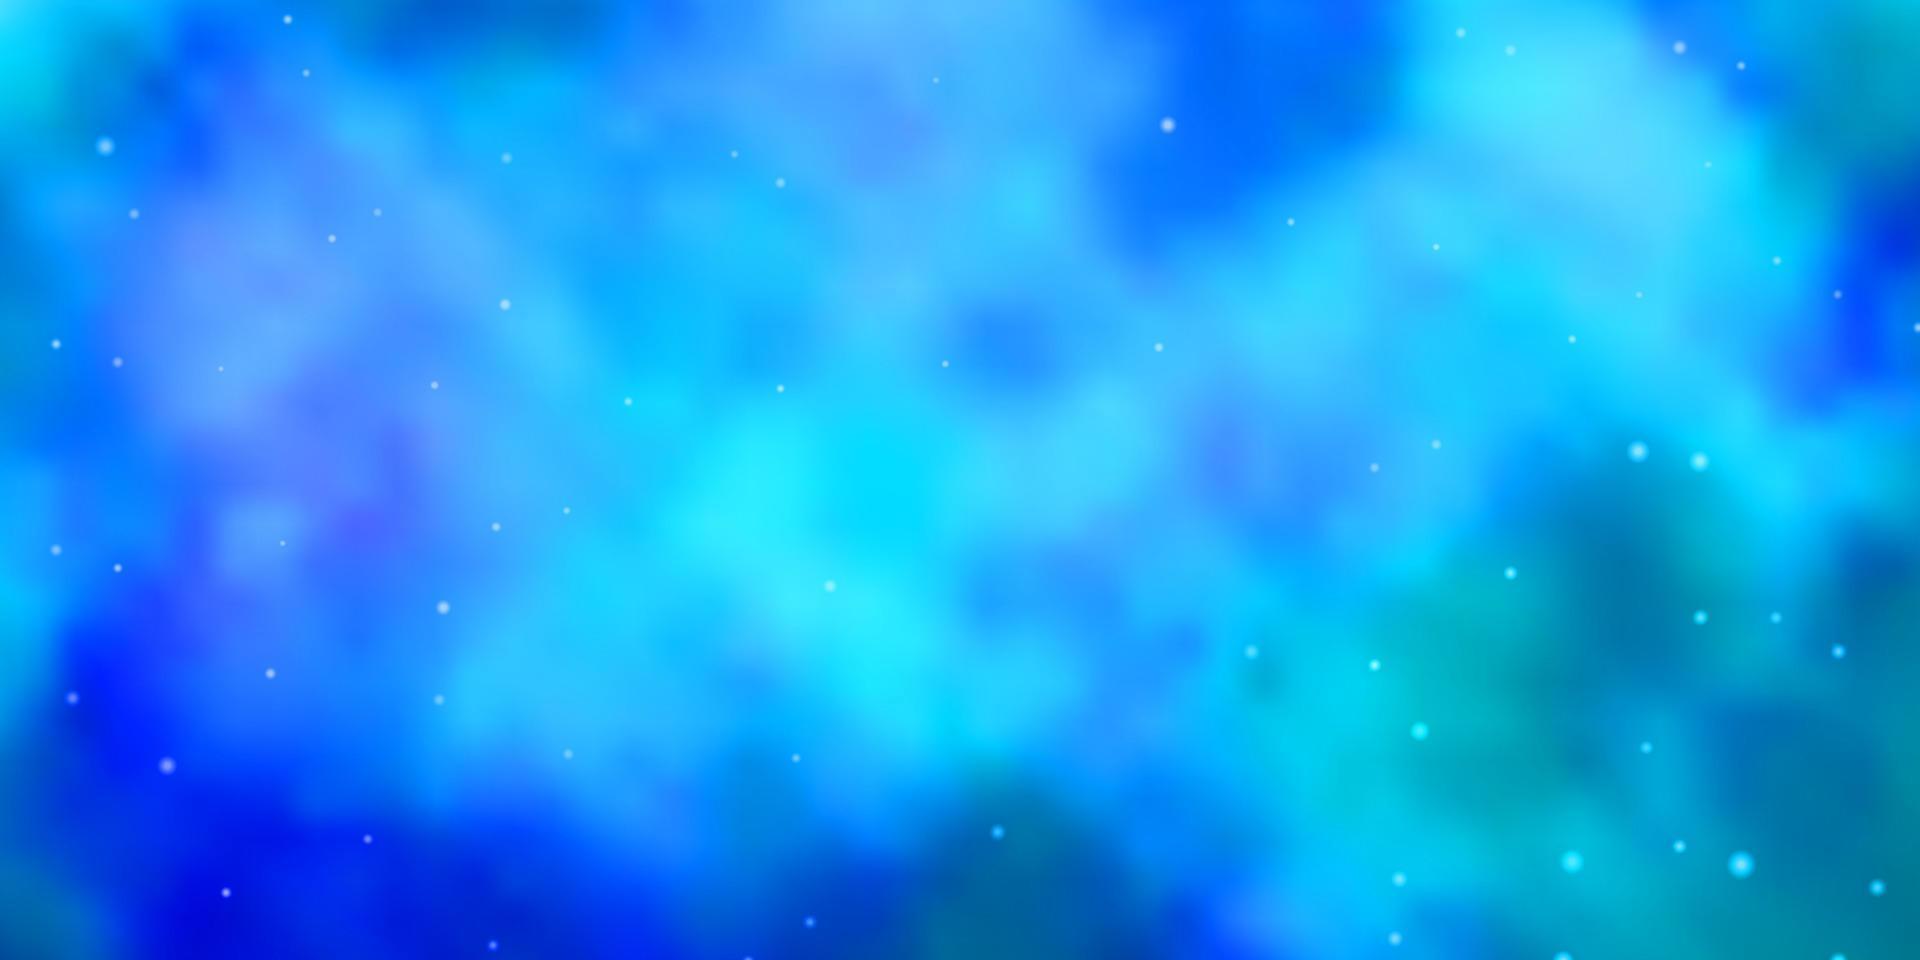 Fondo de vector azul claro con estrellas de colores.